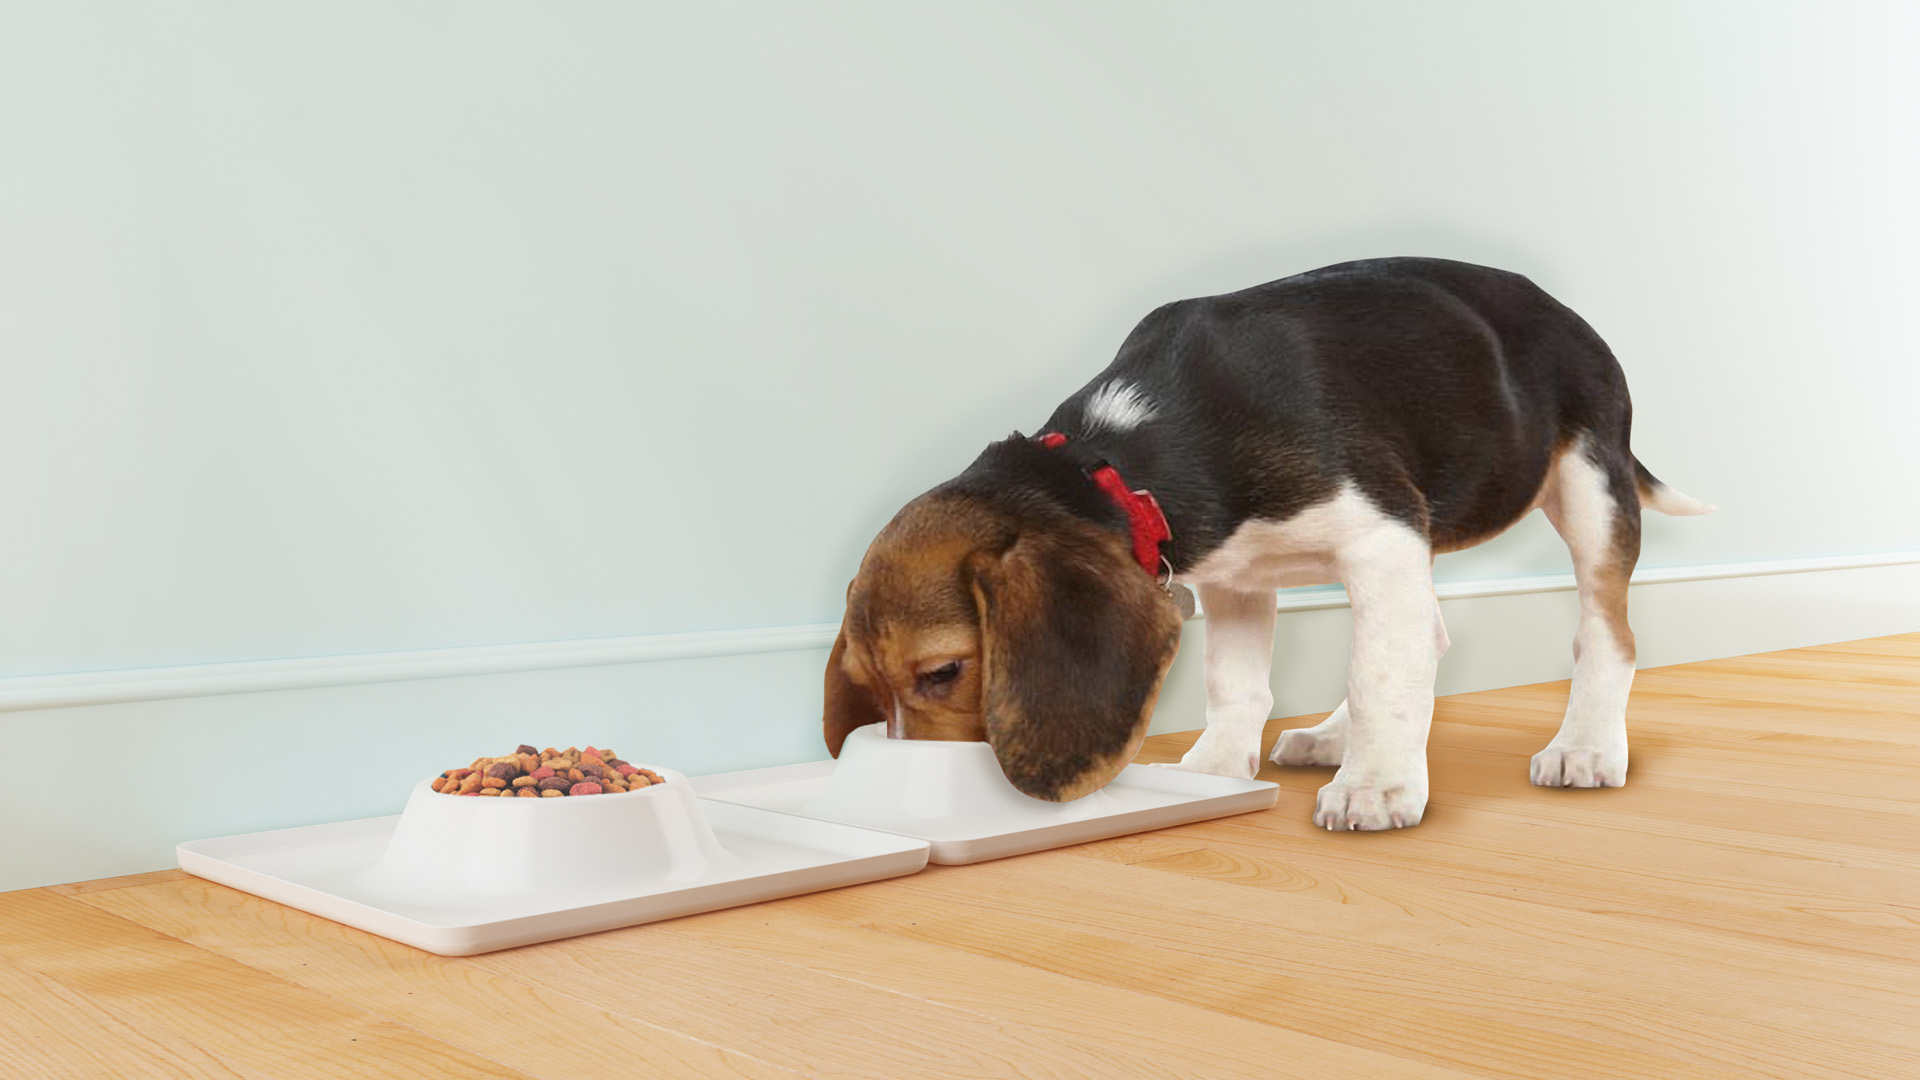 La perrarina puede ser sustituida con comida casera que cumpla con los nutrientes necesarios para el desarrollo canino